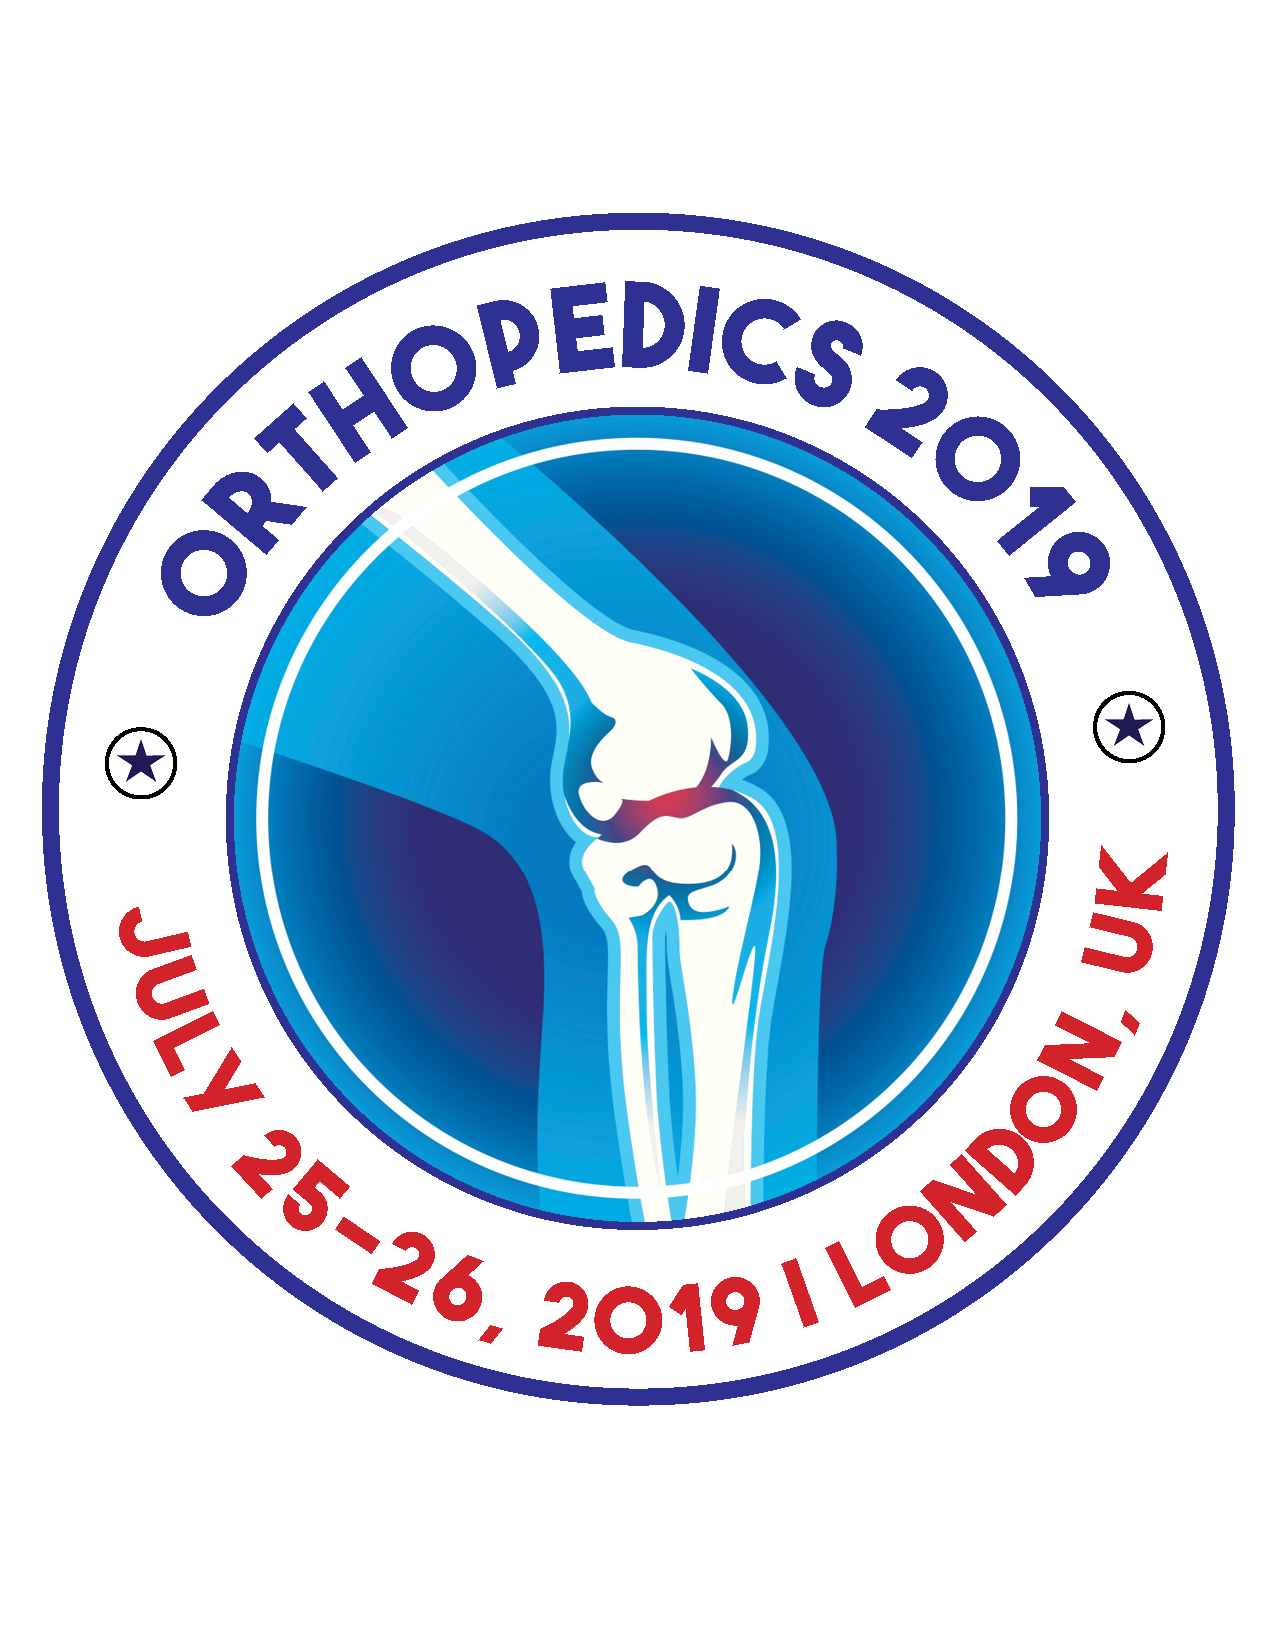 13th International Conference on Orthopedics, Arthroplasty and Rheumatology